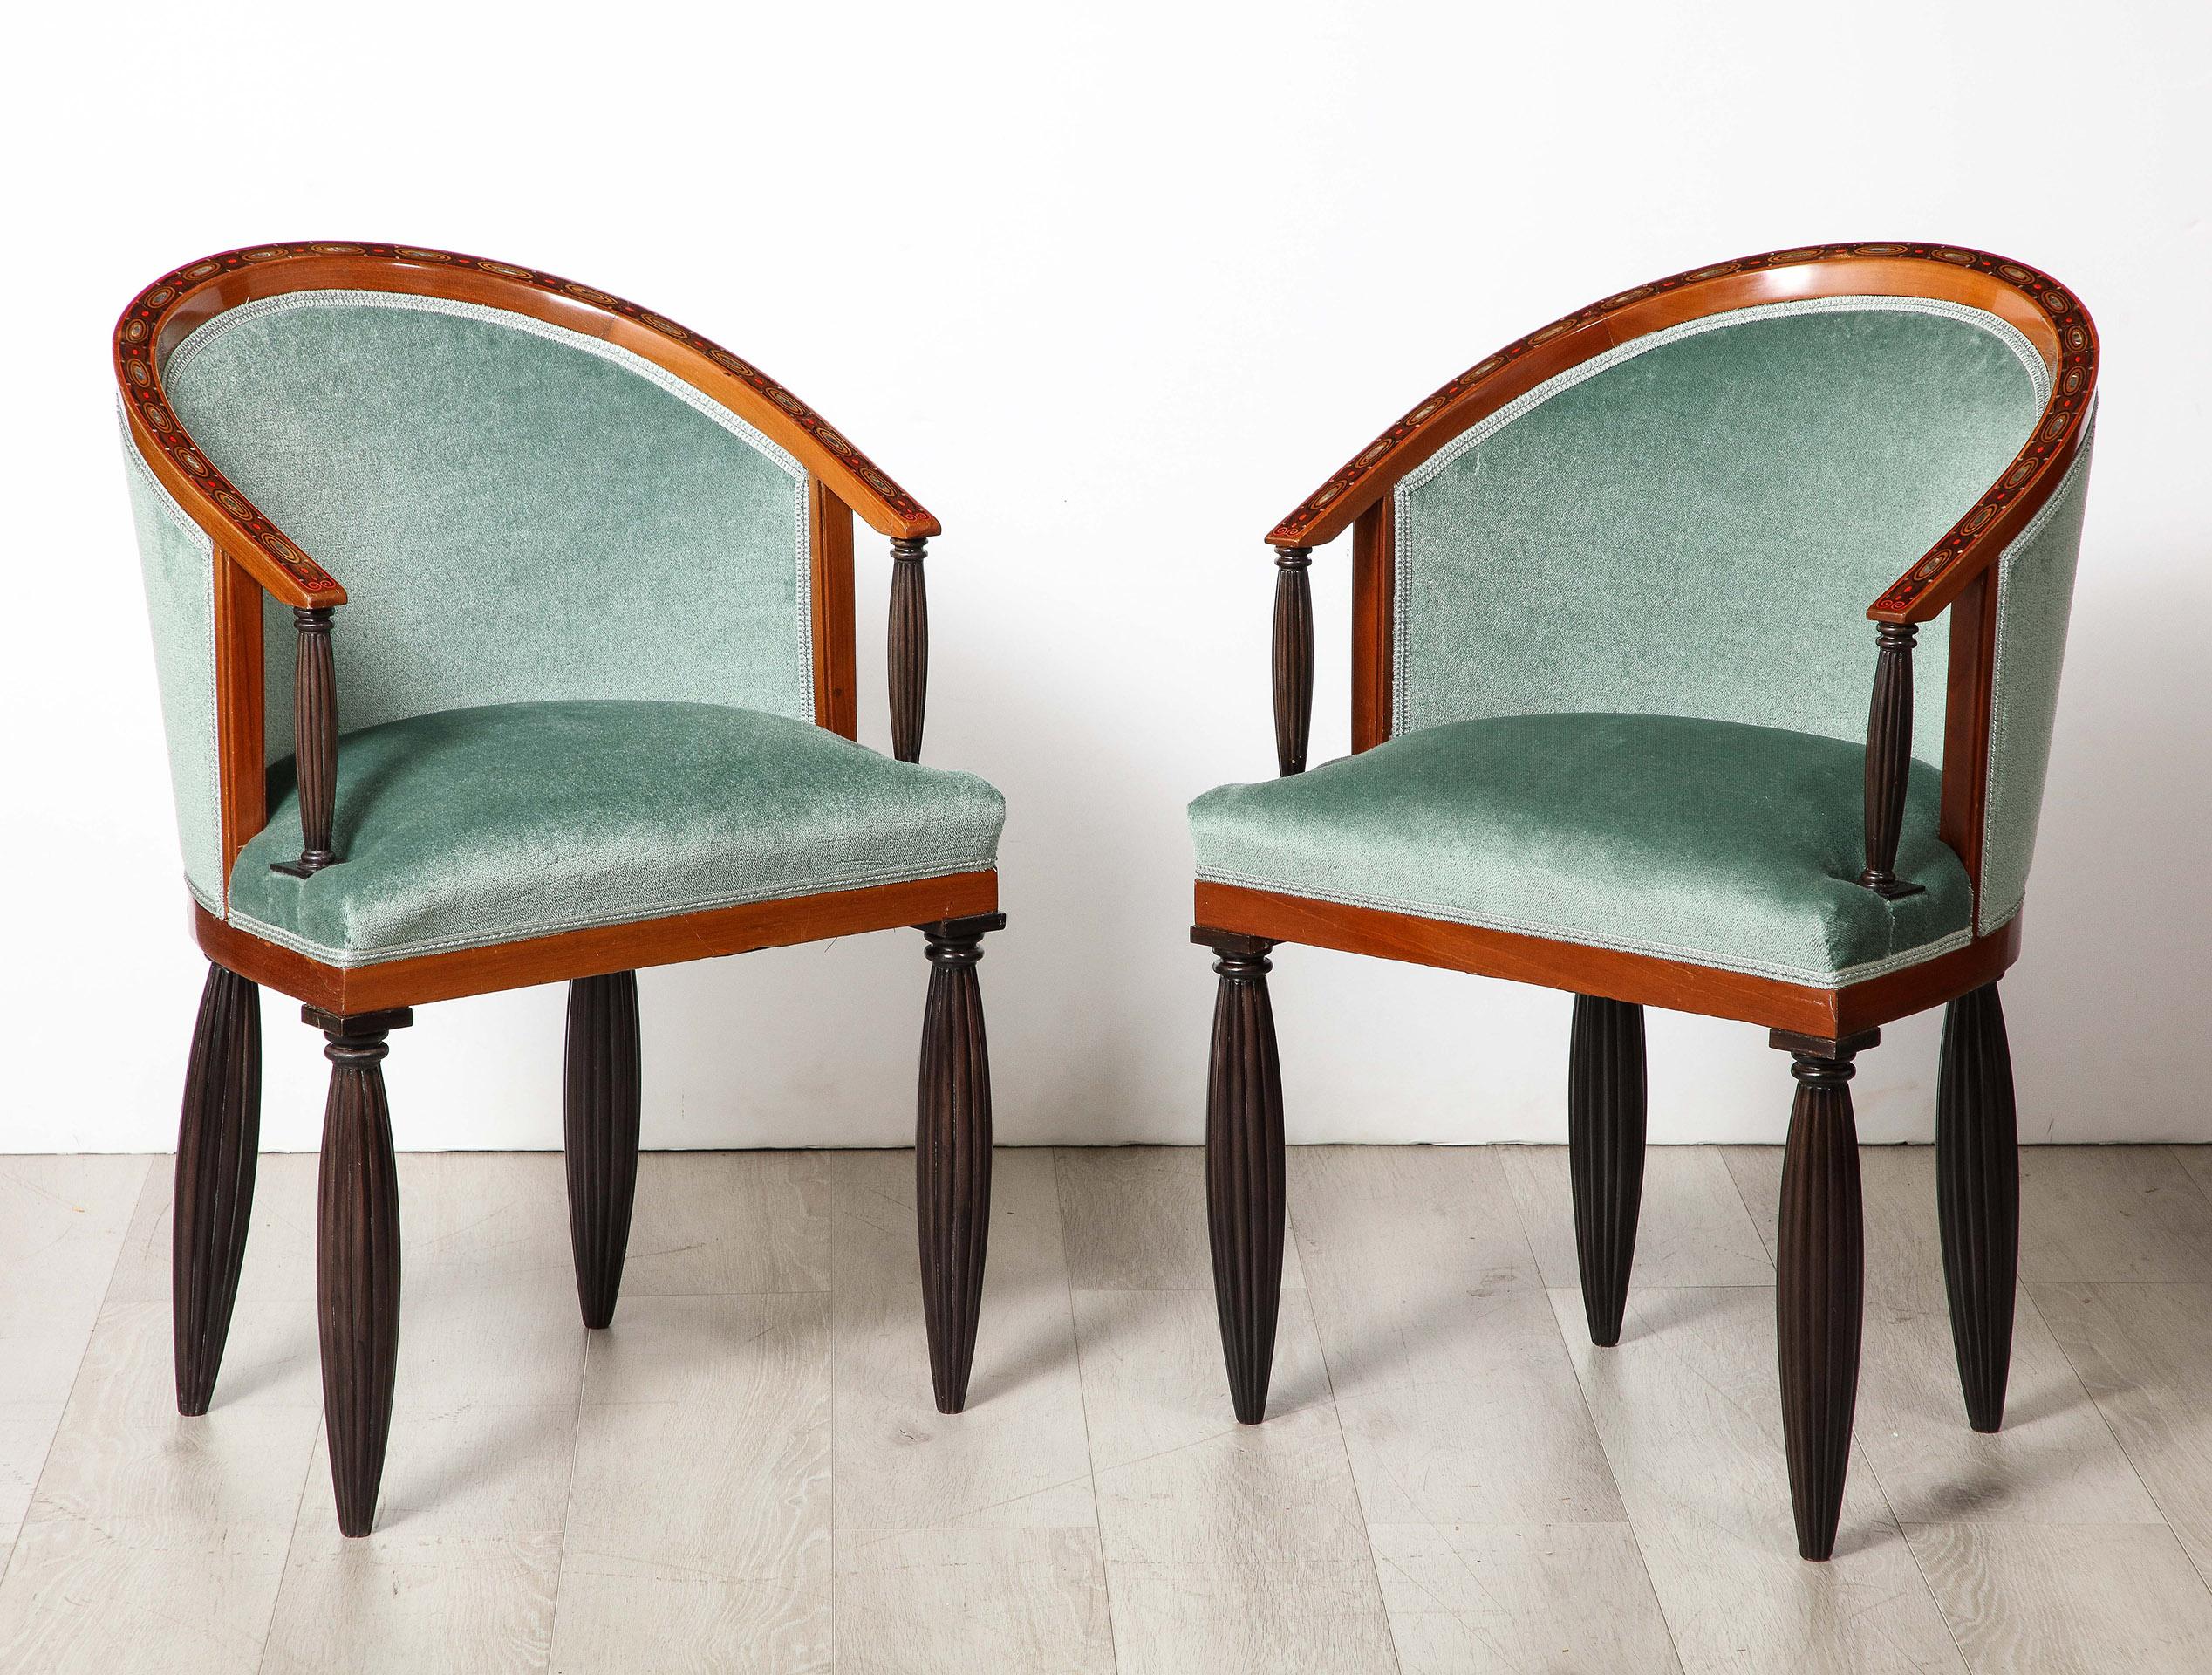 Ein hervorragendes Beispiel für frühes Art Deco Design von Maurice Dufrene. Jeder der acht (8) Esszimmerstühle besteht aus einem Rahmen, der aufwändig mit Intarsien versehen ist.  Obstholz und Perlmutt. Der Rahmen ist mit kannelierten Säulen aus